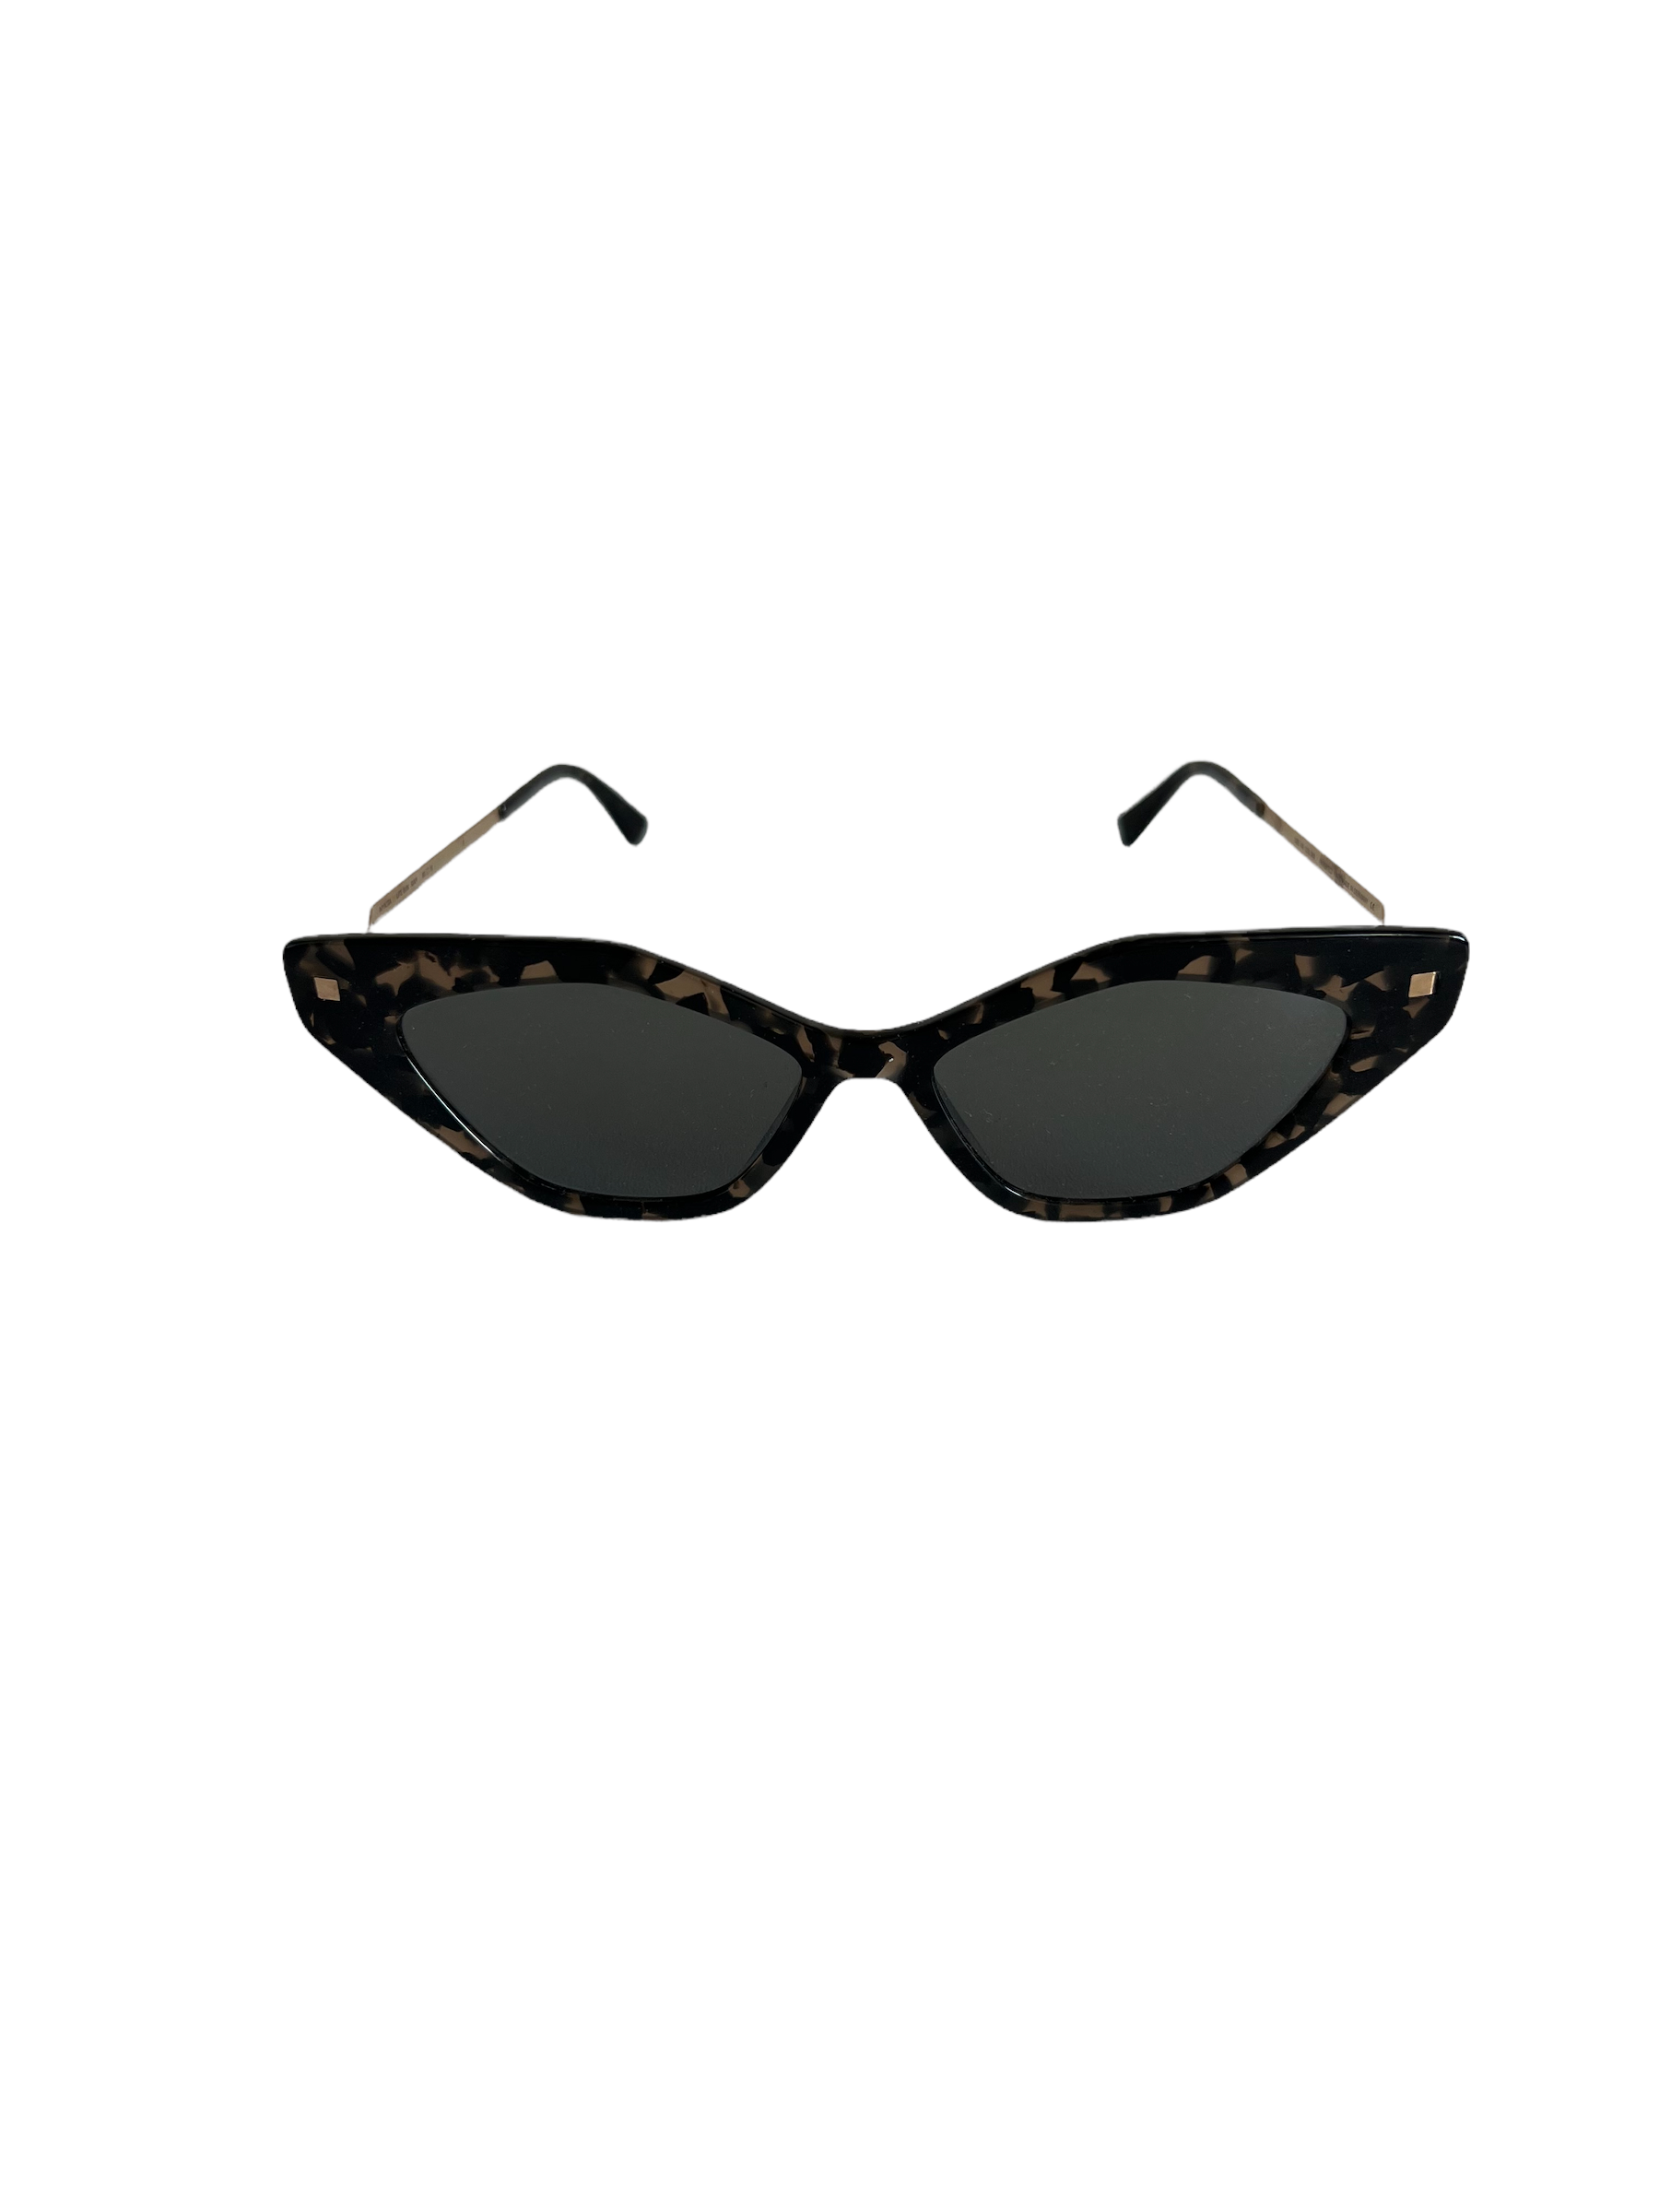 Produktbild der Mykita Sunglasses leo gold flexibleren vorne vor weißem Hintergrund.